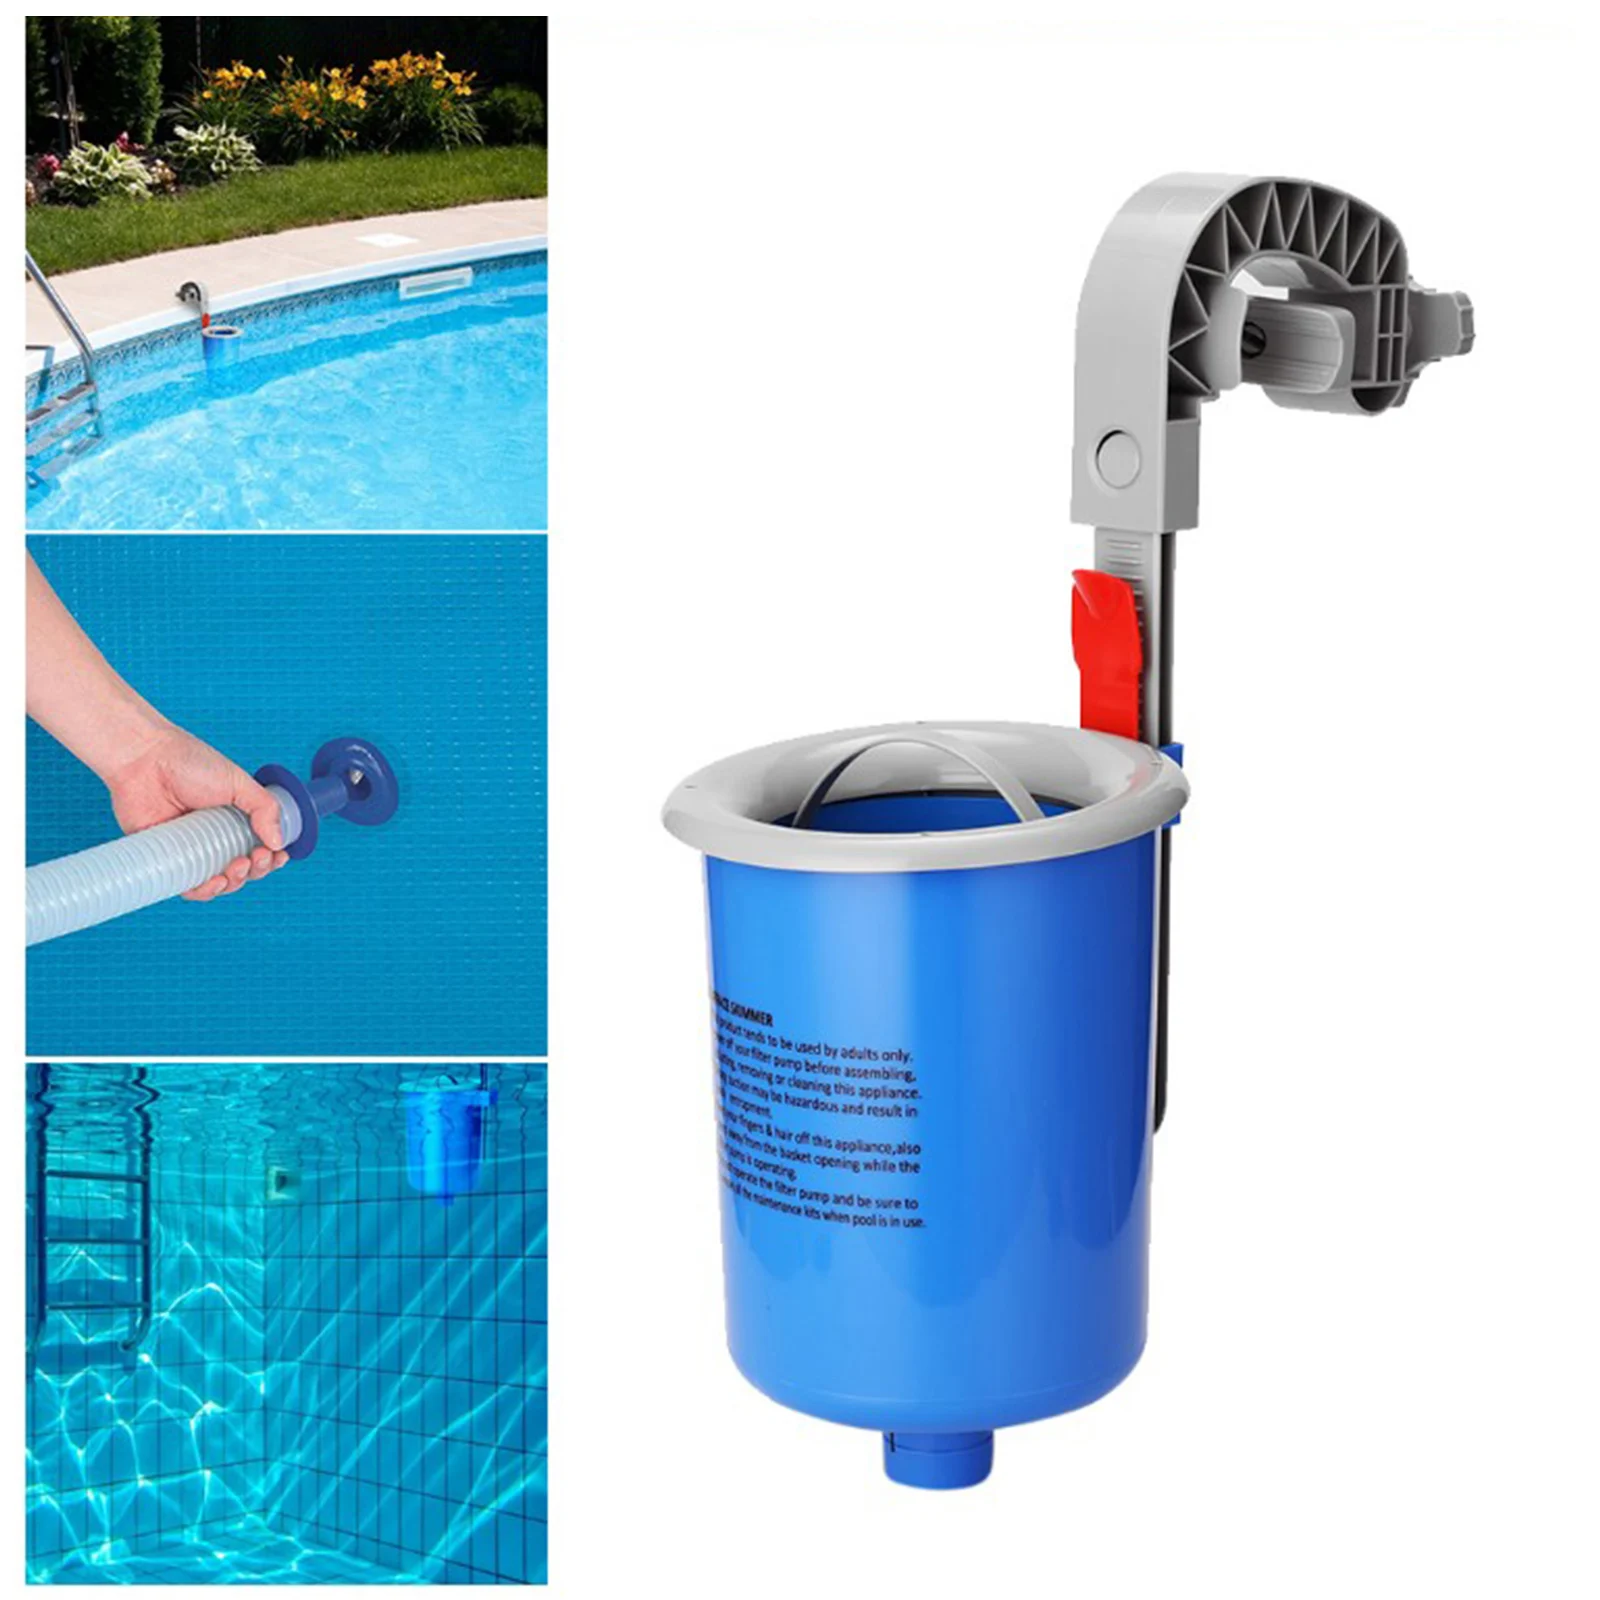 Skimmer automático para piscina, fácil de instalar, para limpiar fuentes